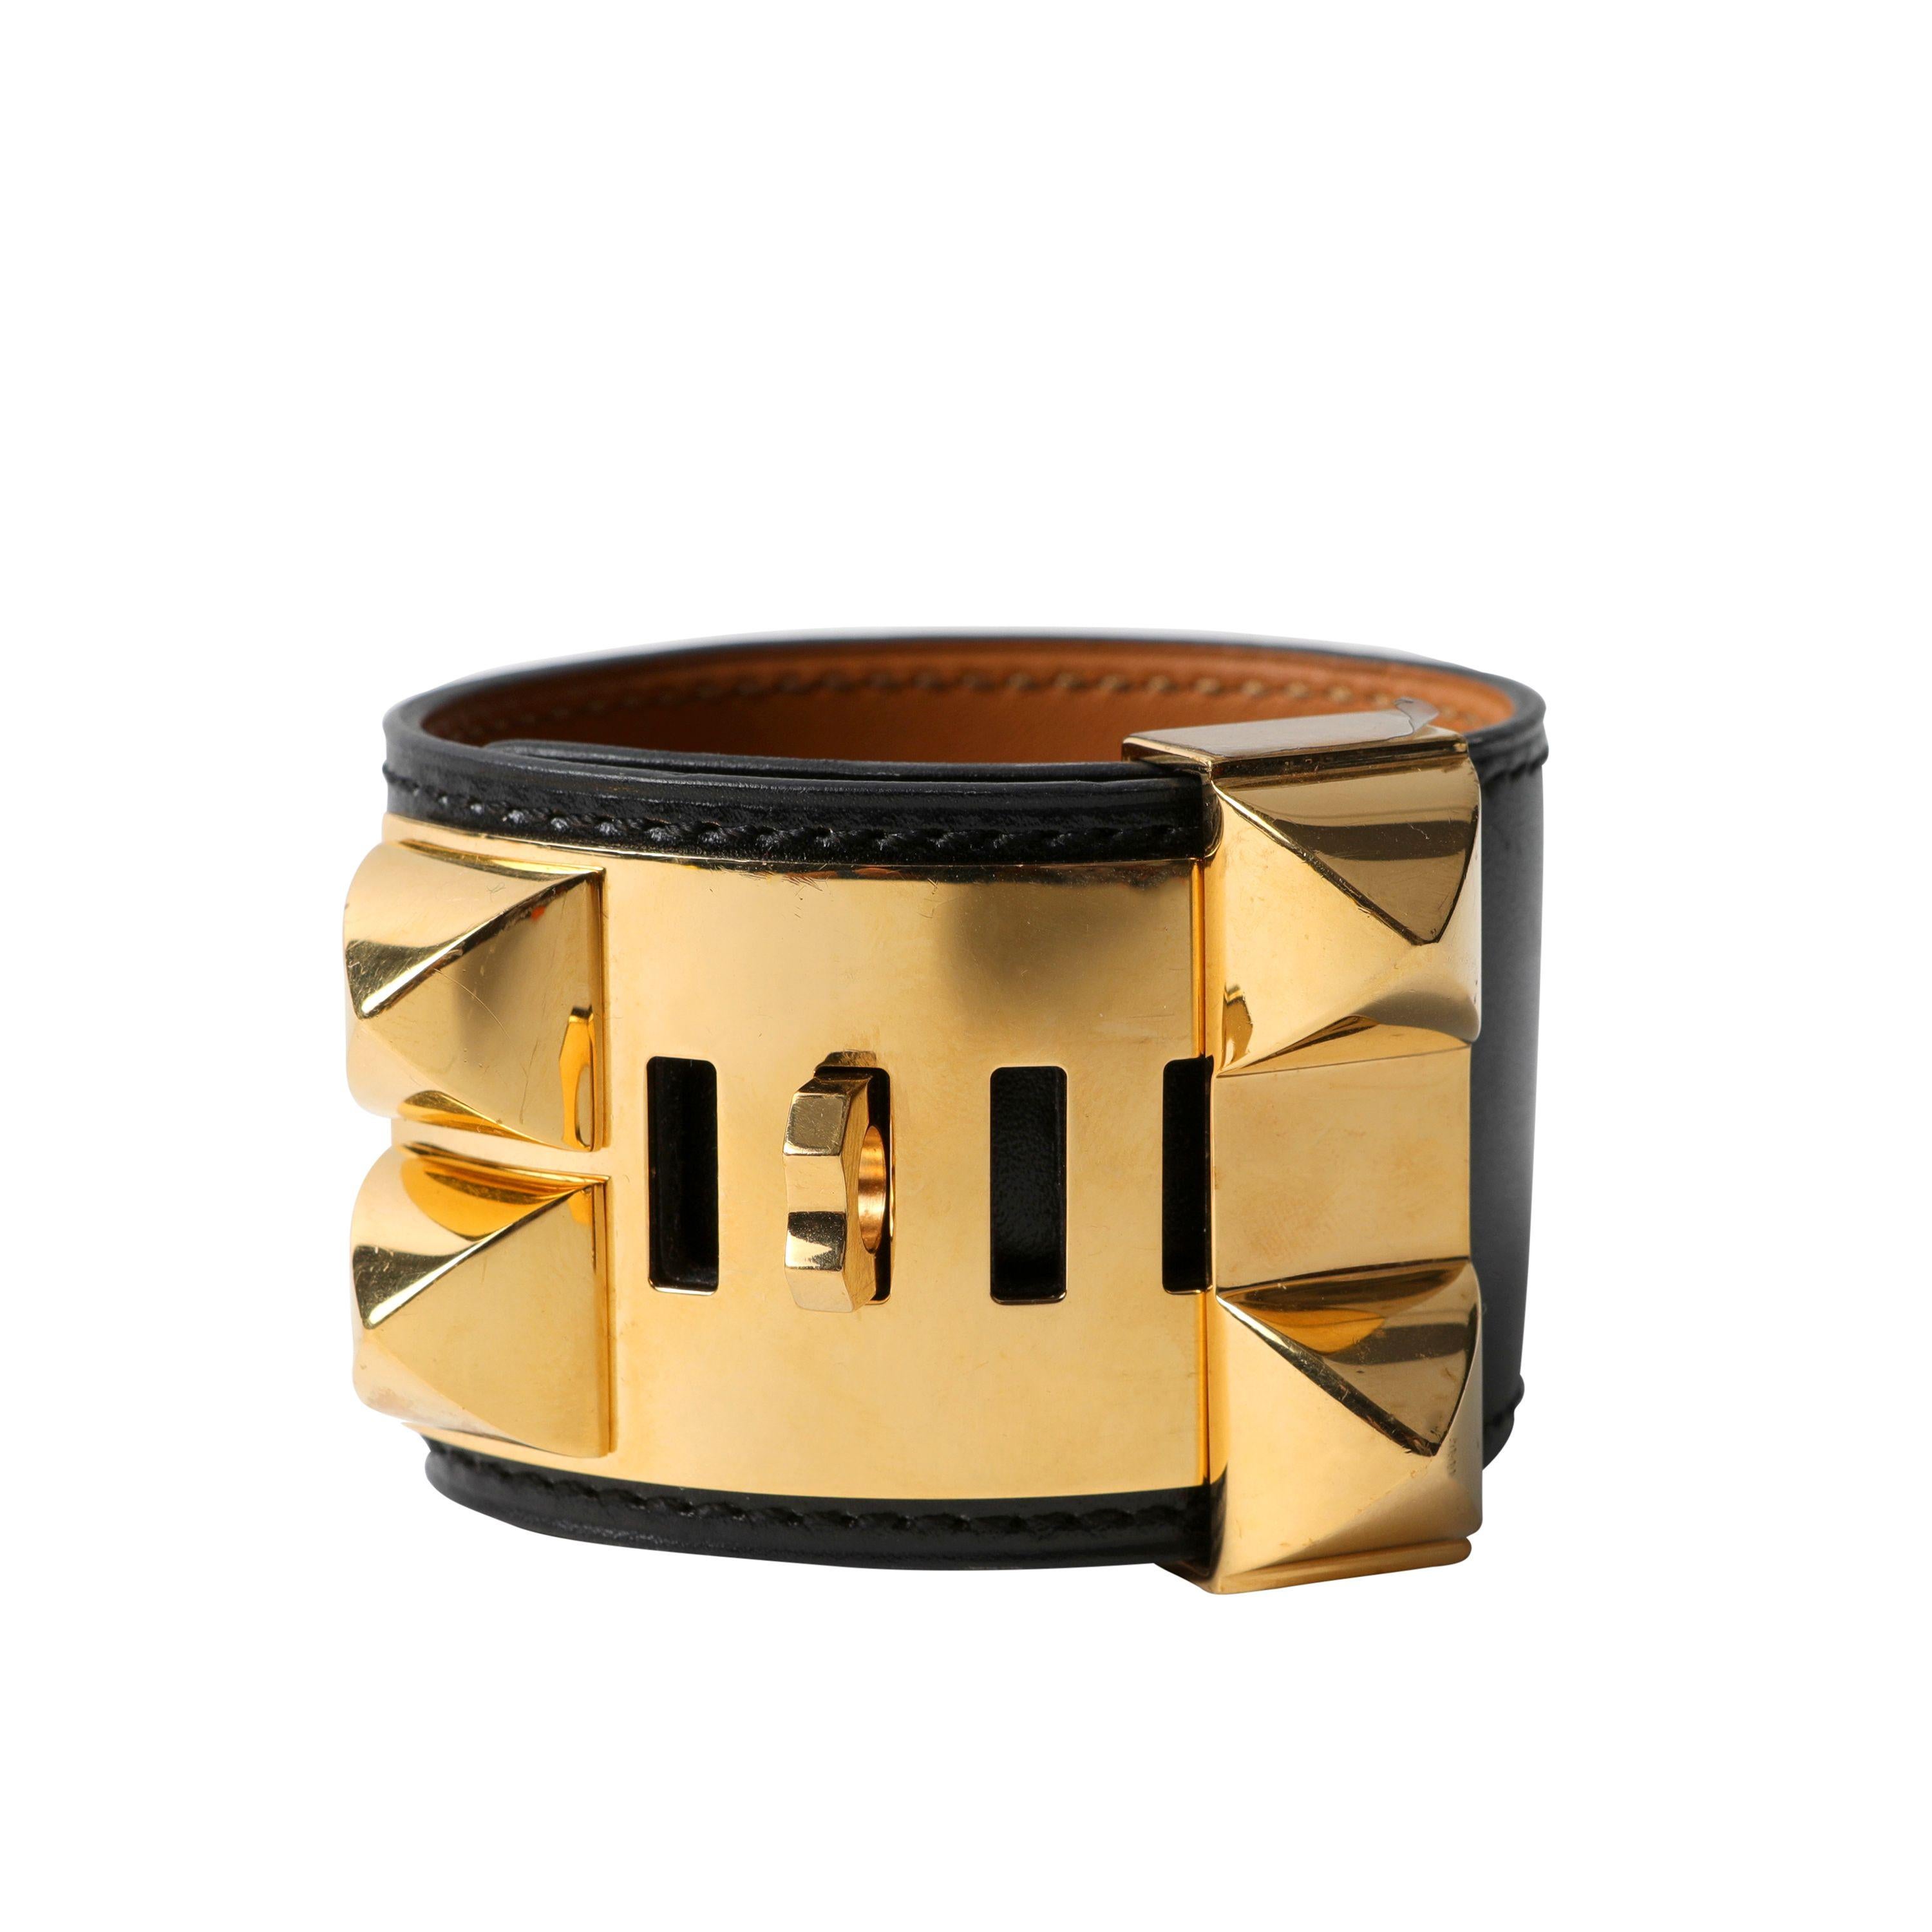 Cet authentique bracelet Hermès Collier de Chien noir est en parfait état.  L'emblématique Icone d'Hermès ajoute une touche de chic à tout ensemble.  Cuir noir avec anneau et clous pyramidaux dorés Medor.  Longueur réglable.  Boîte ou pochette